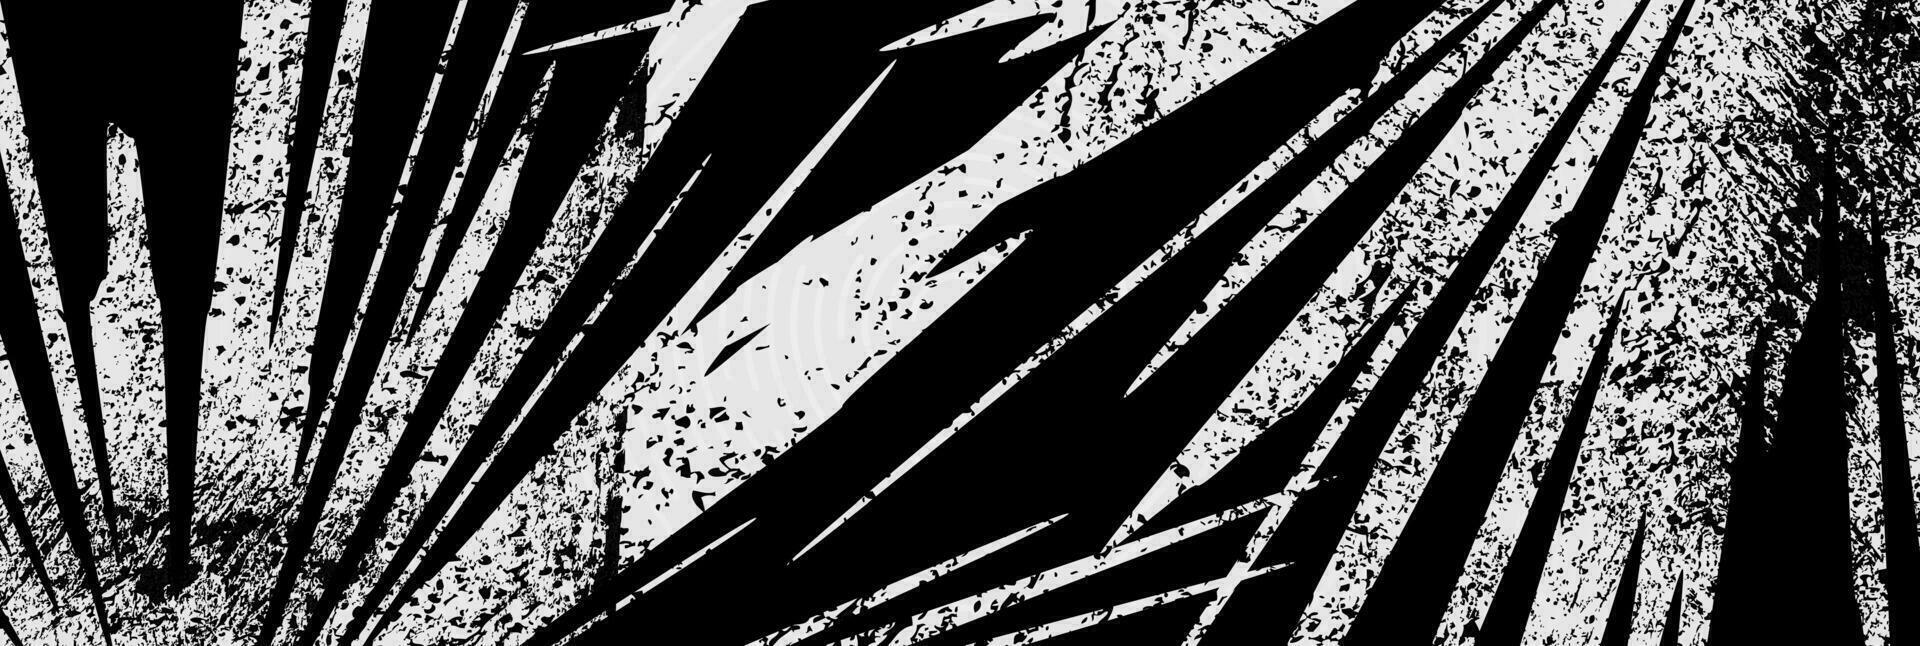 abstrakt svart och vit grunge bakgrund vektor